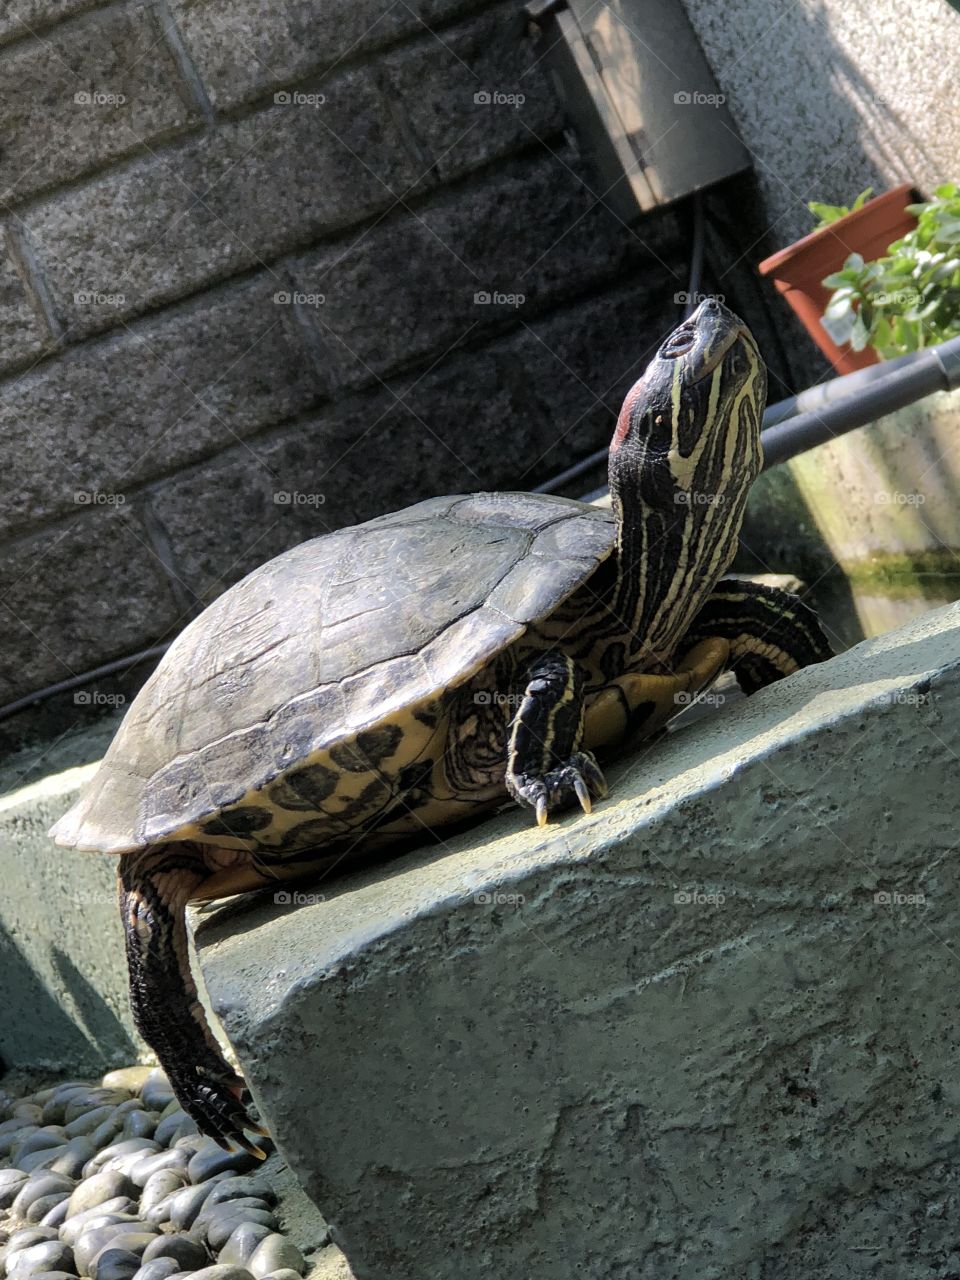 Sun-baked turtle